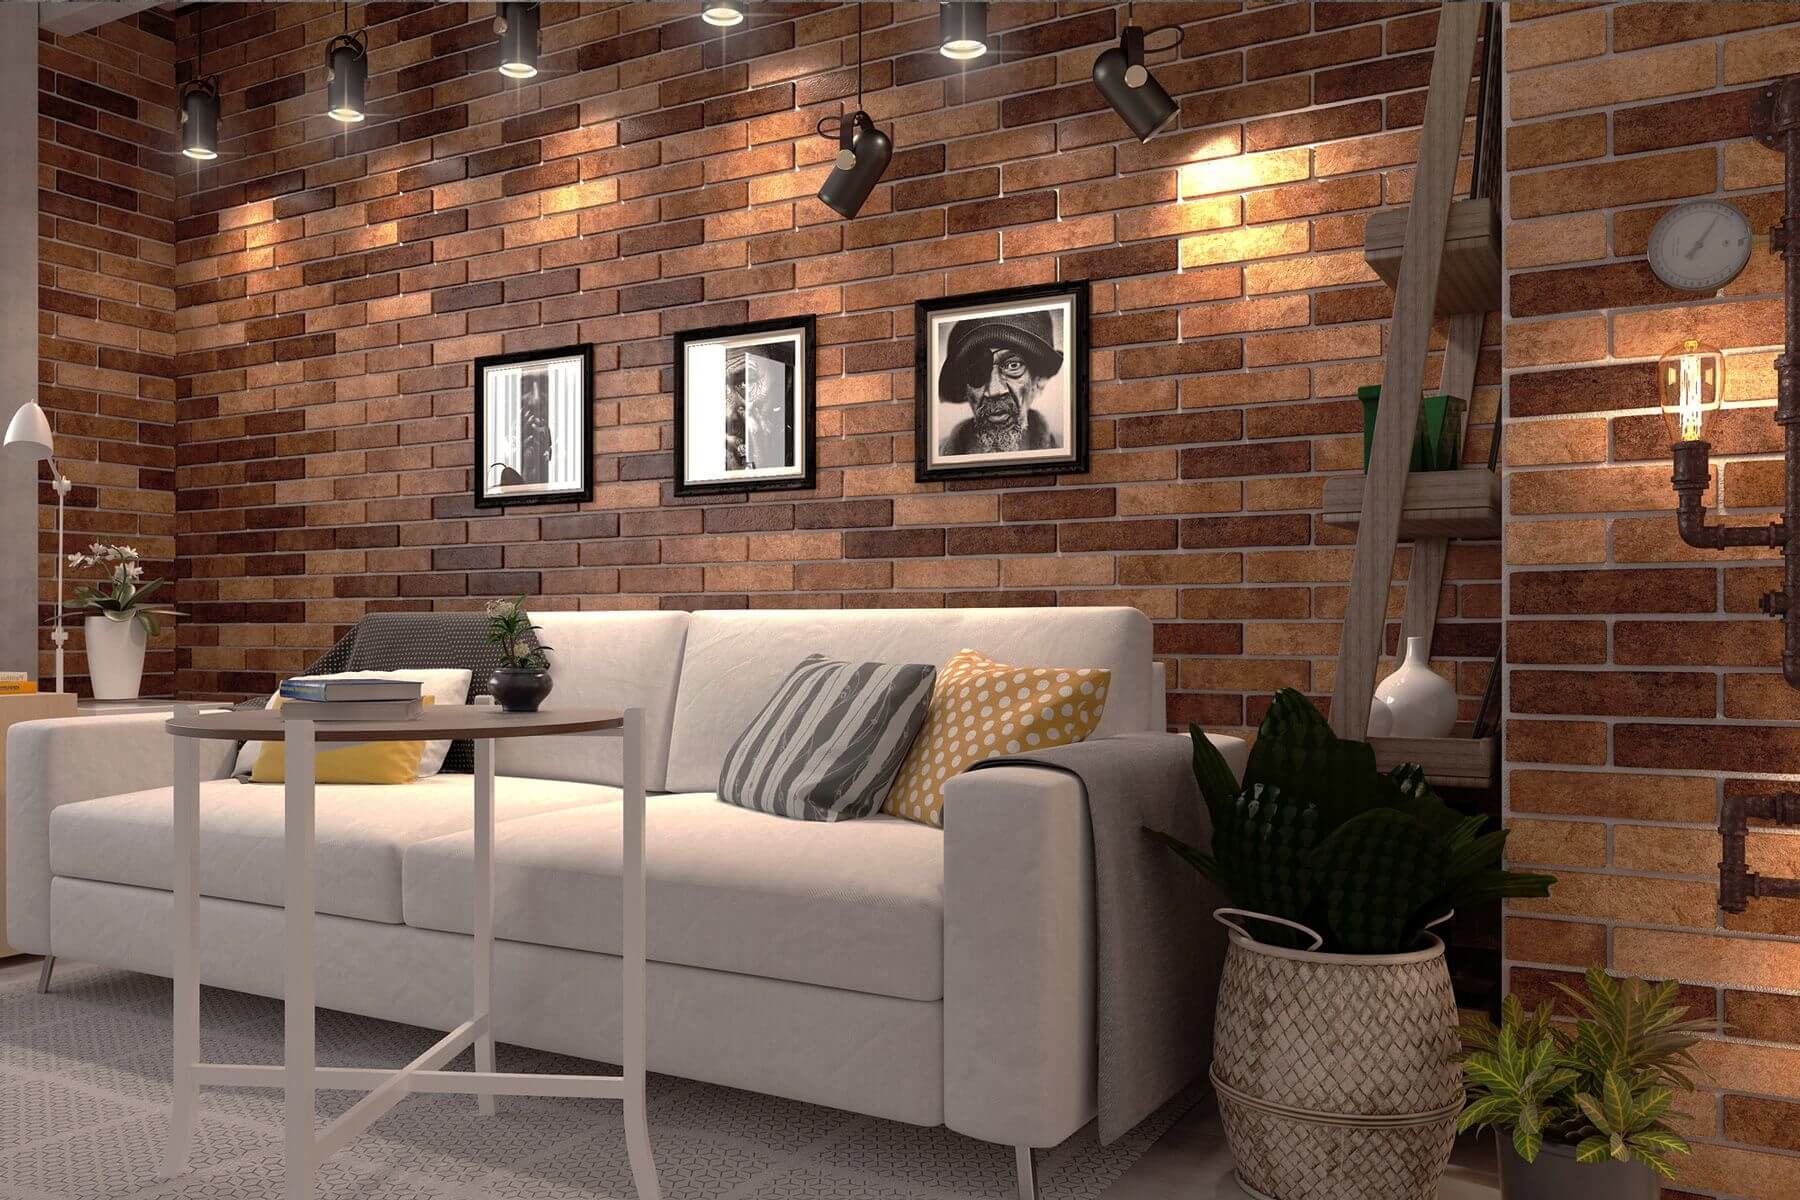 Wall Tiles Living Room Design Uk